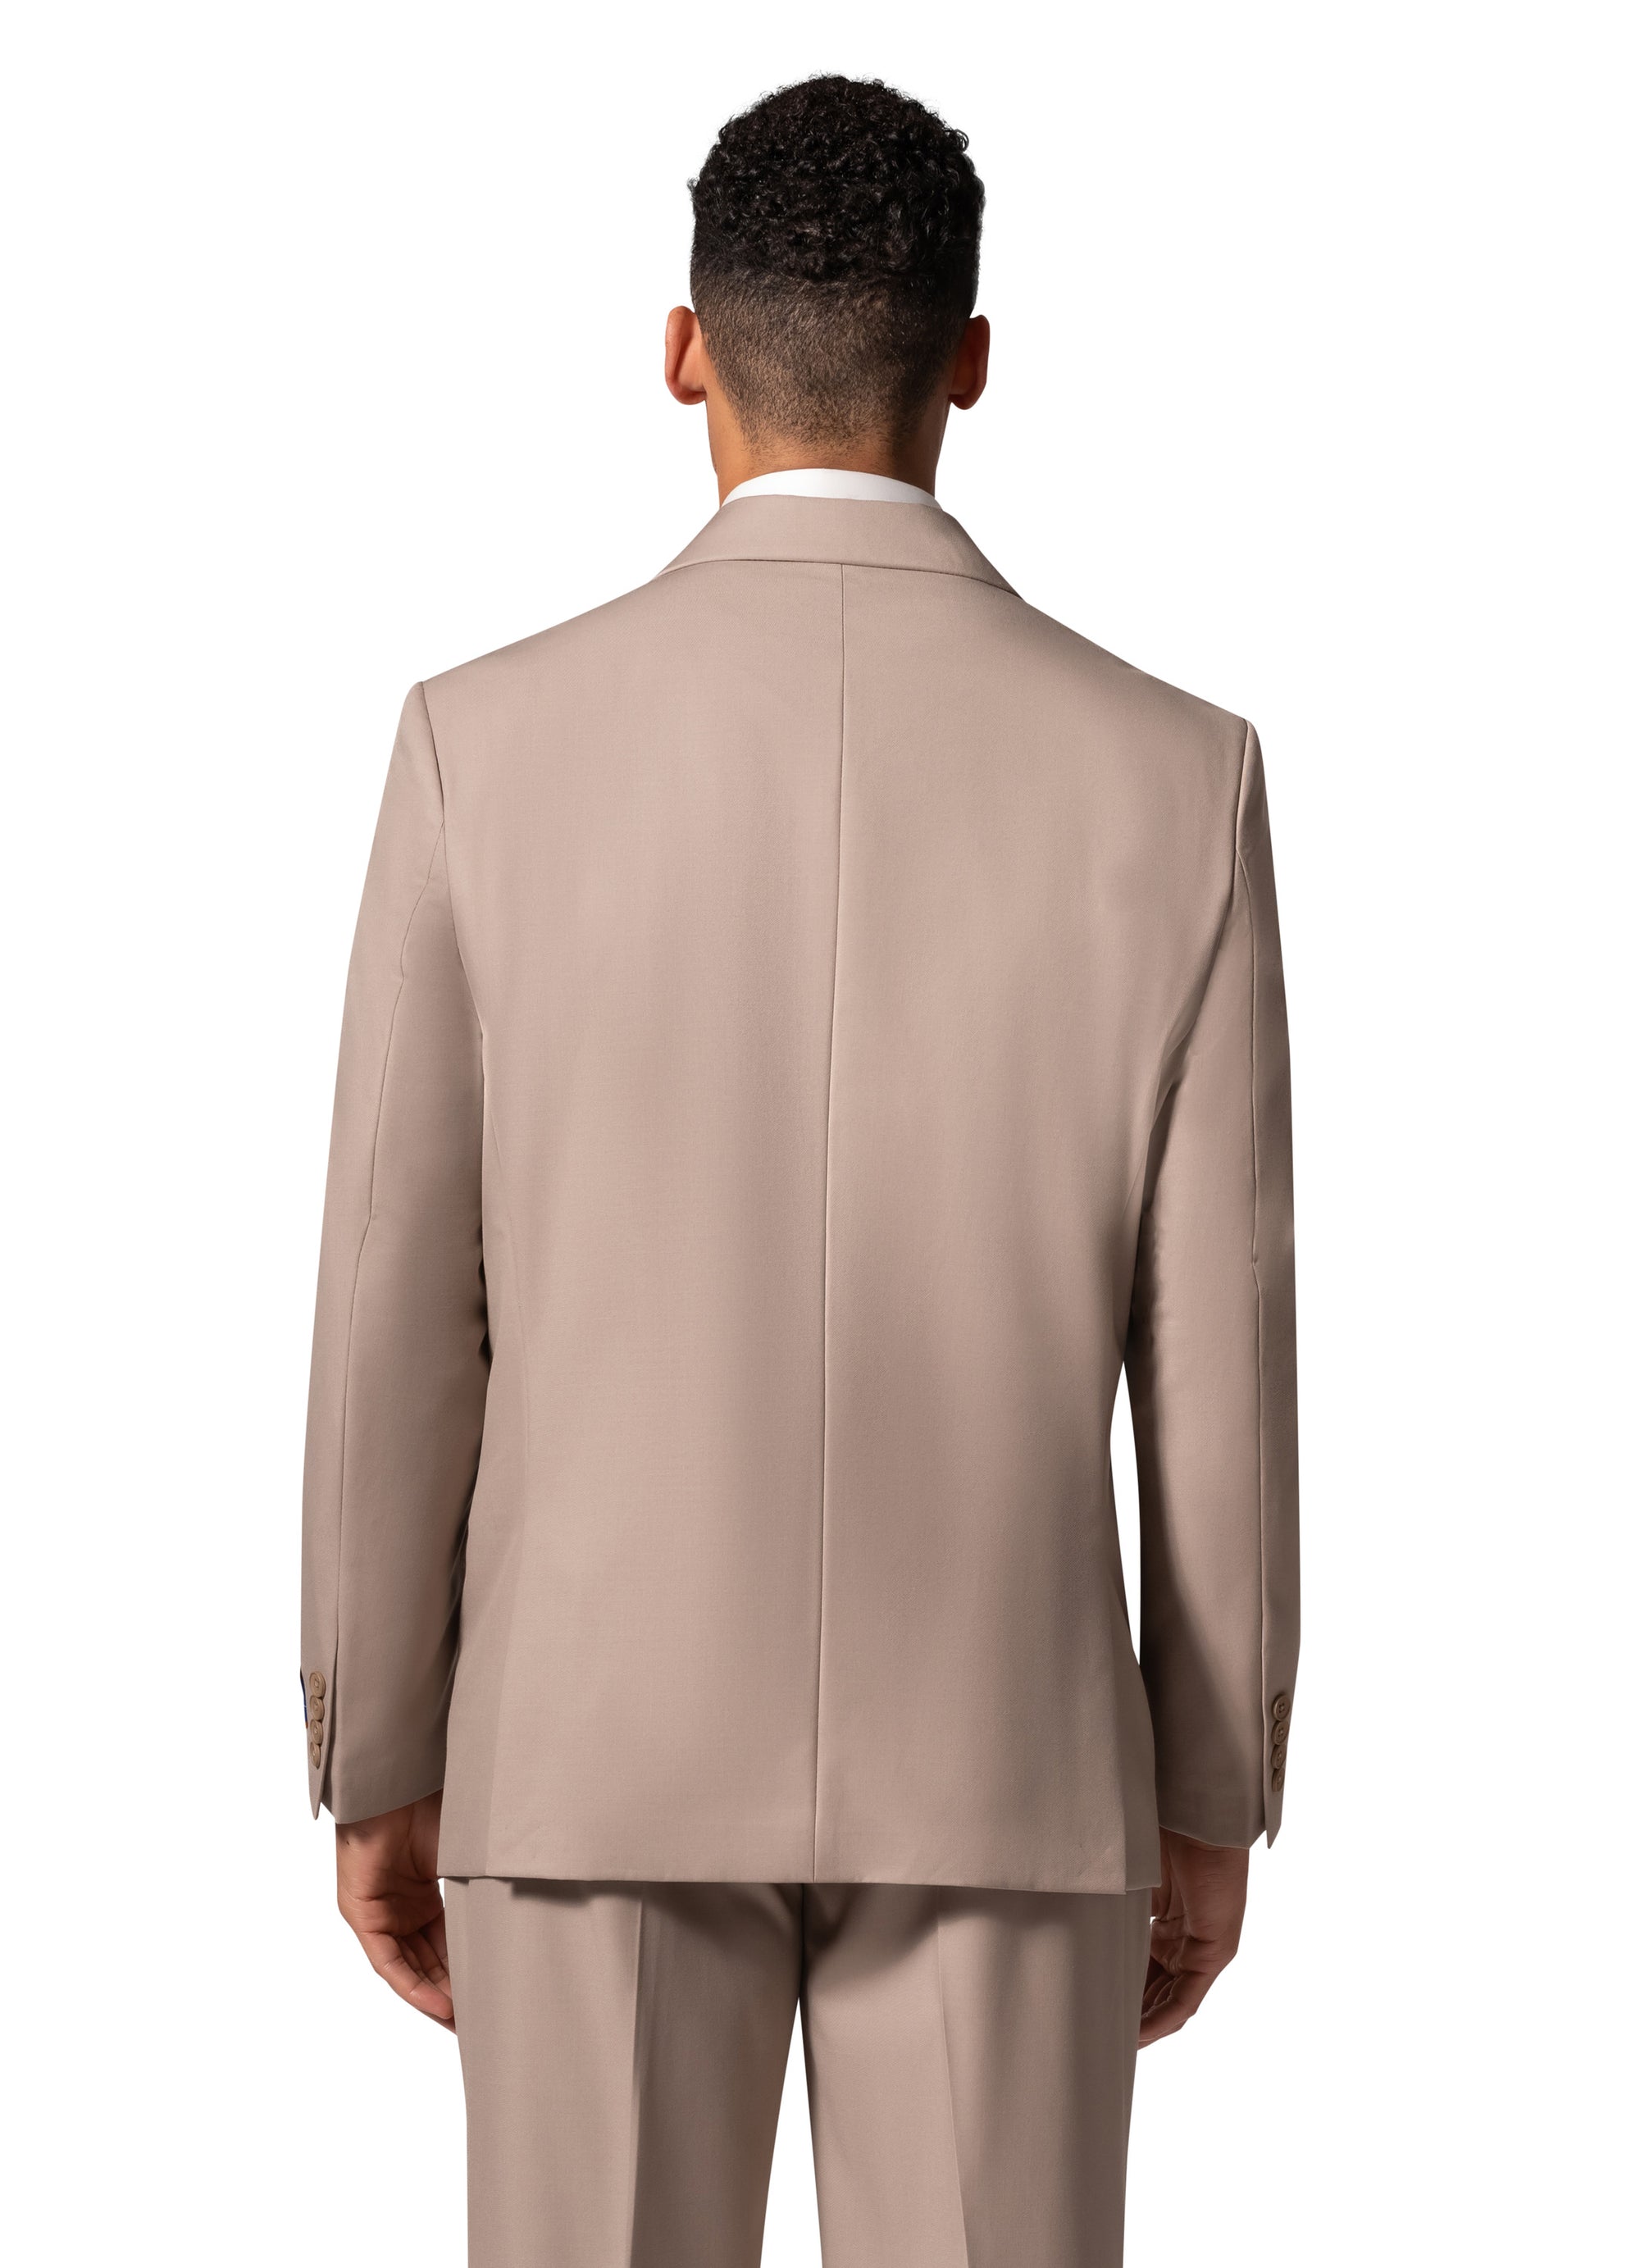 Berragamo A6732 D/B Slim Fit Suit - Tan